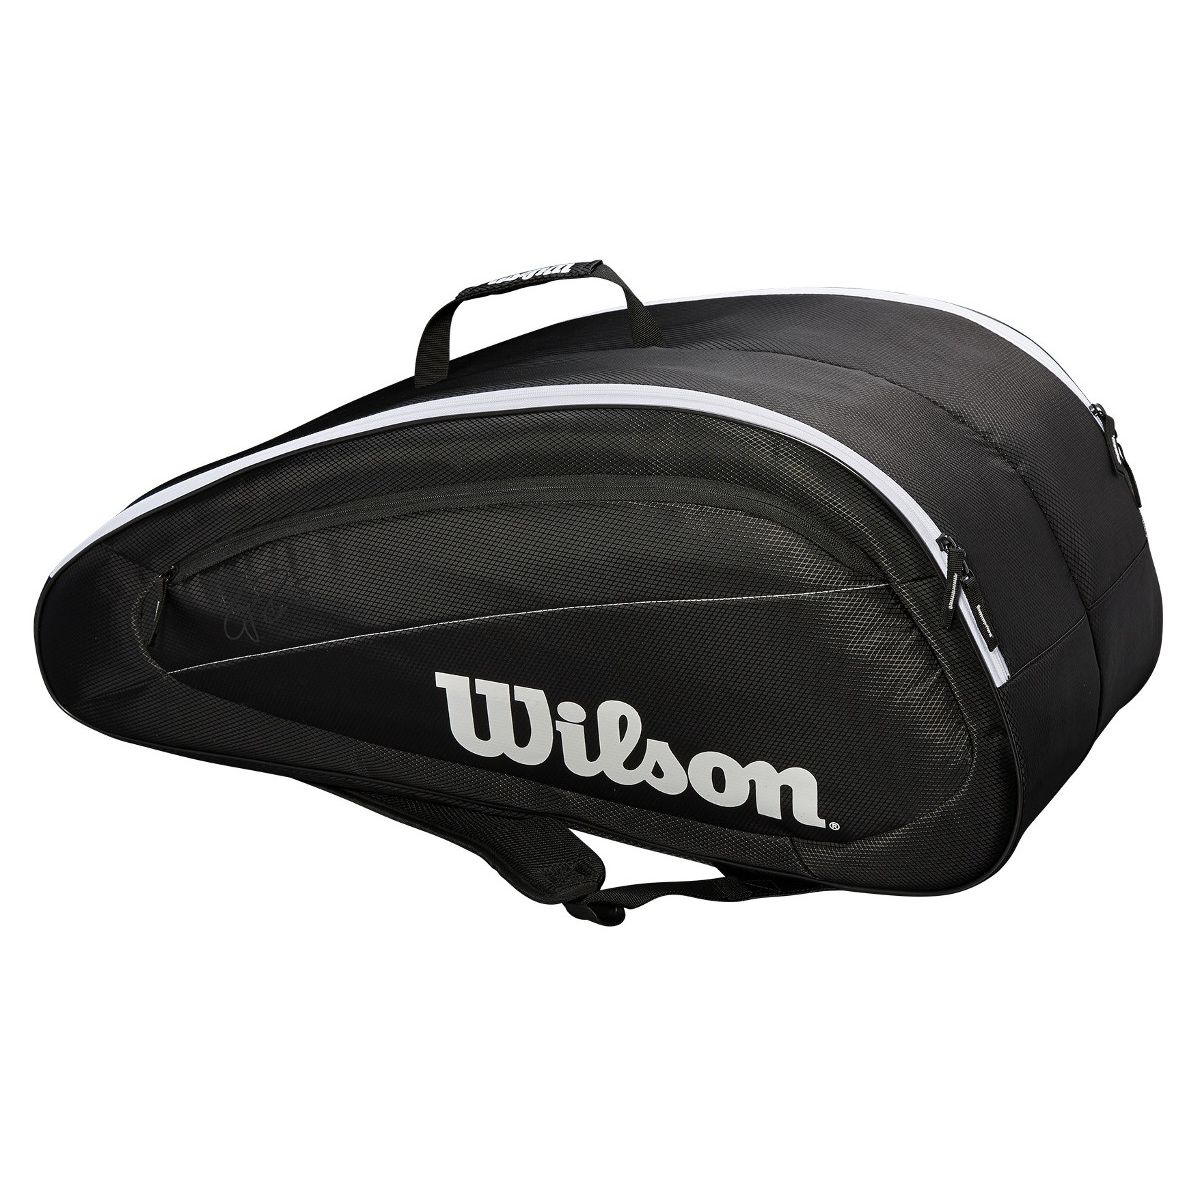 backpack tennis bag